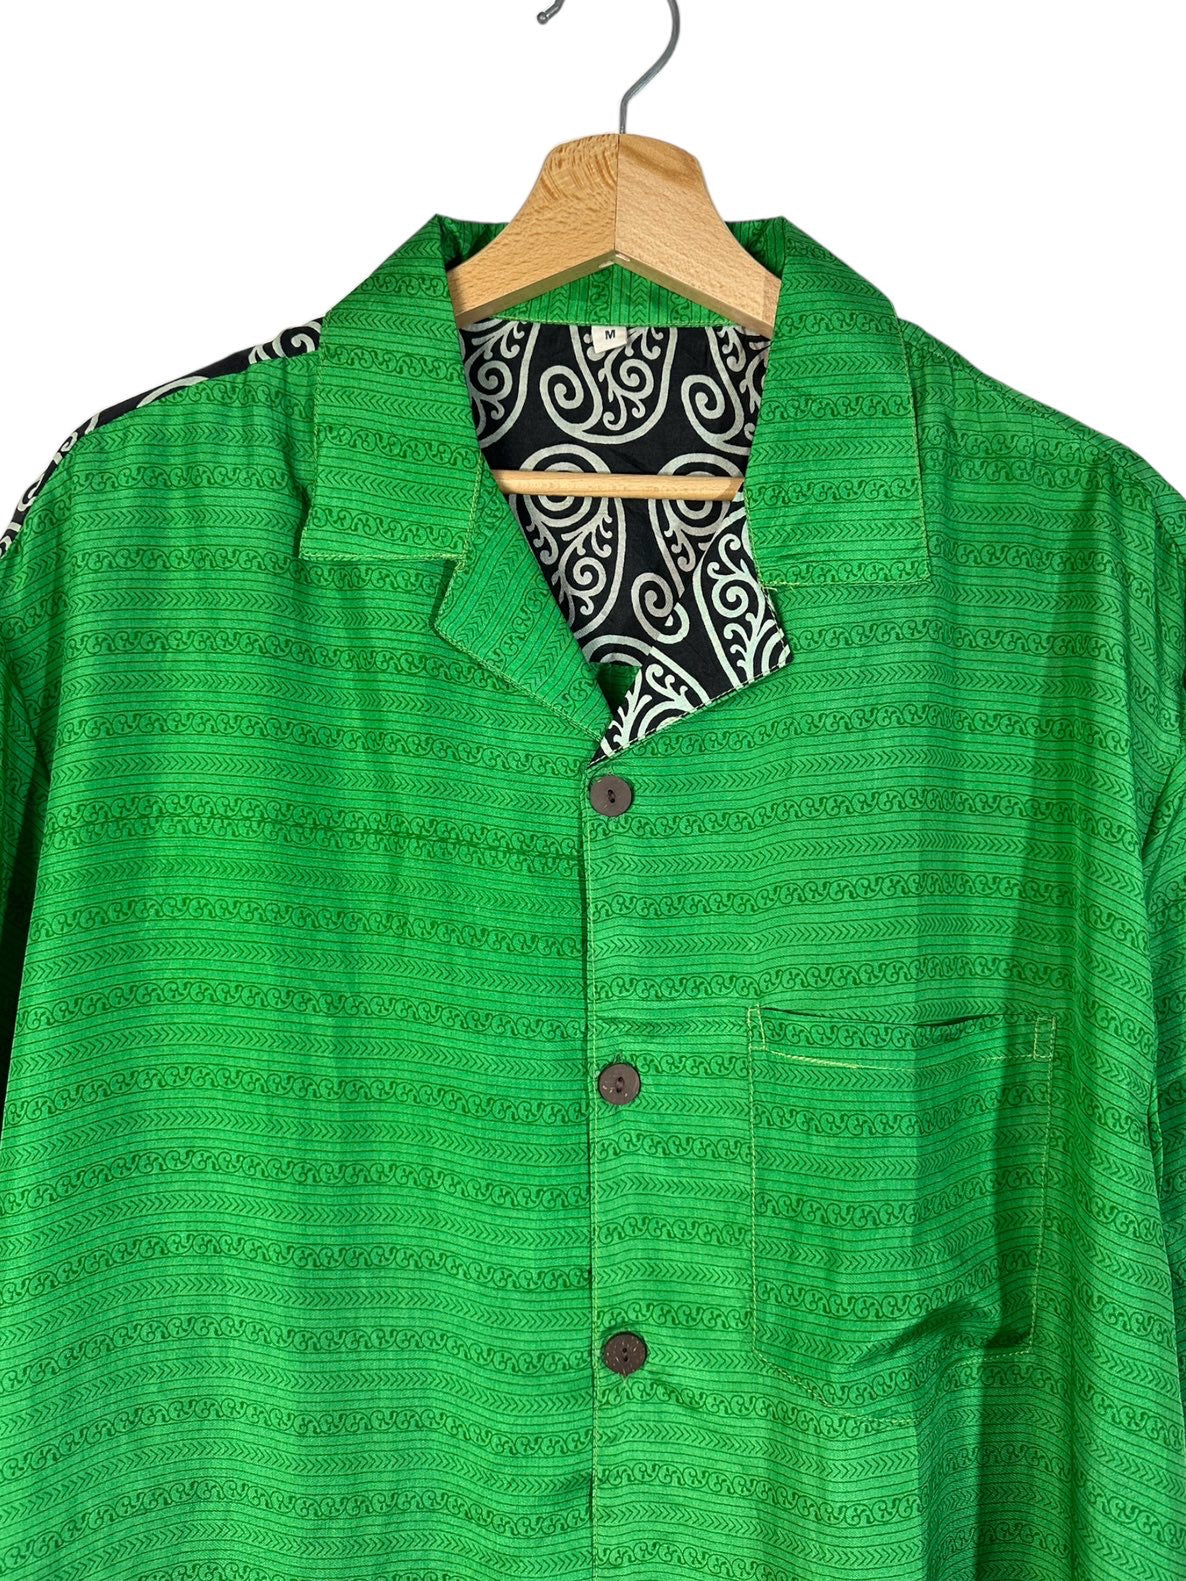 Camisa de seda vintage Paisley estampado (M)